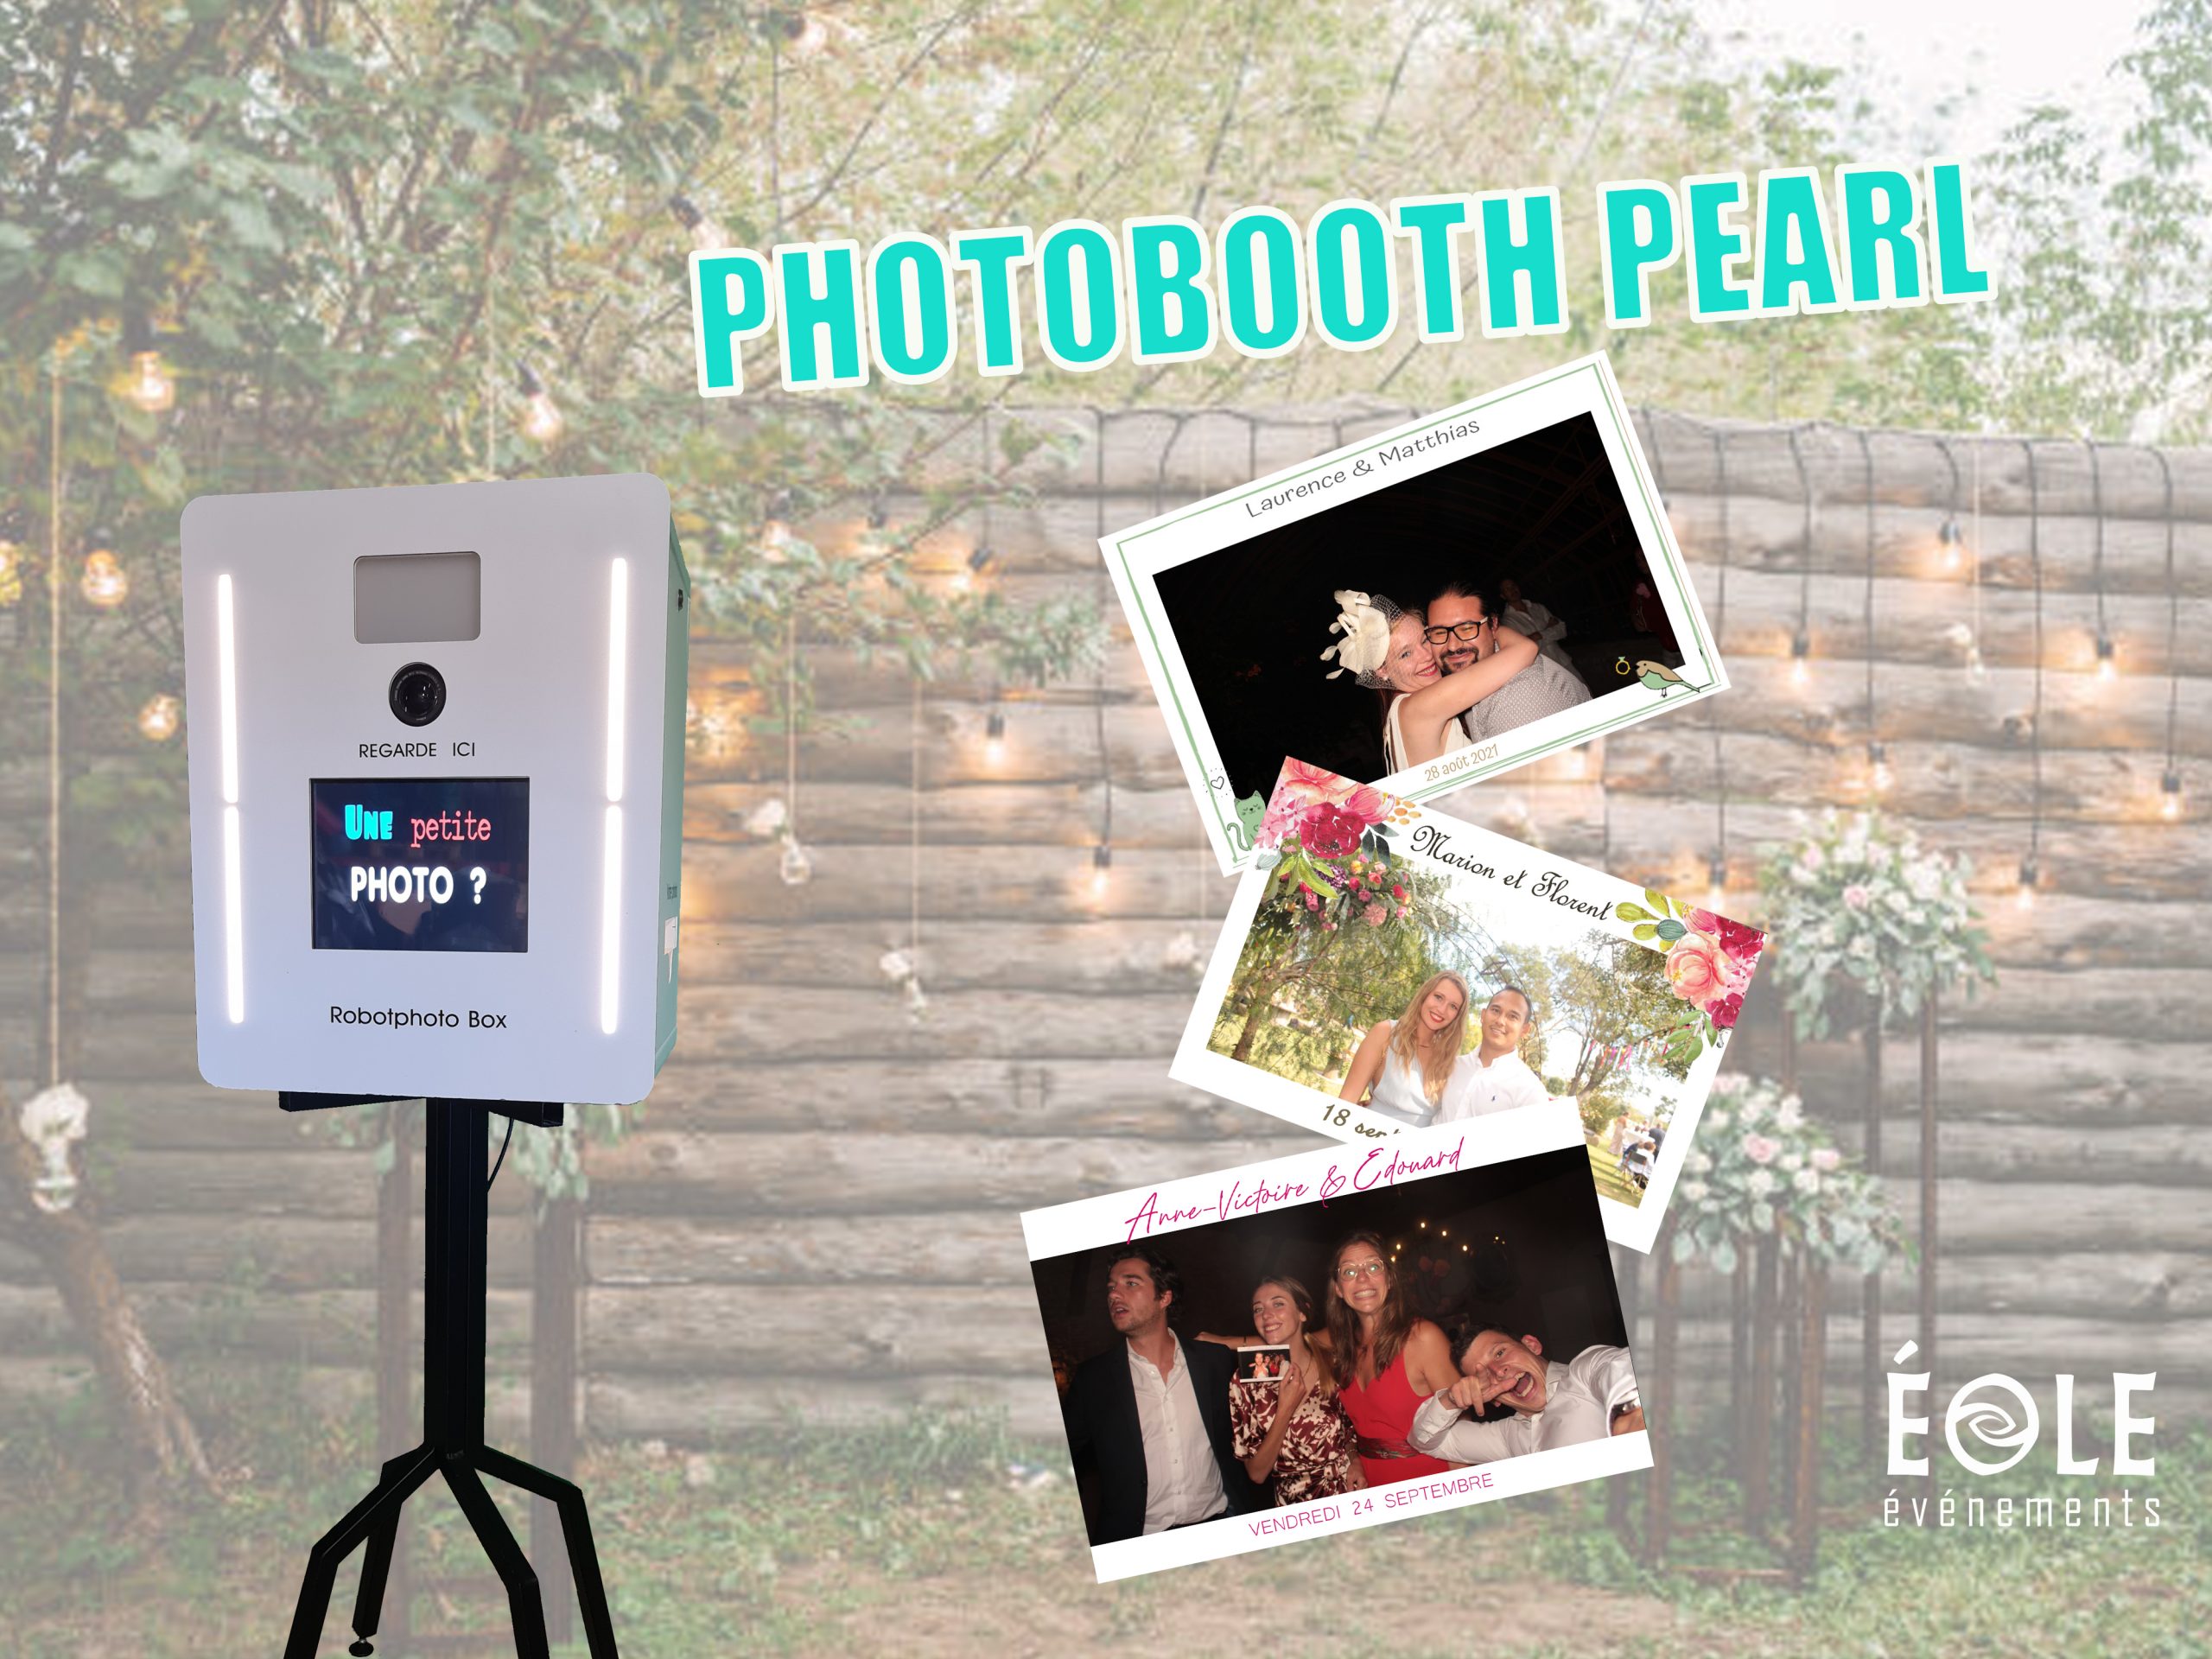 un photobooth "pearl" avec des photos aux cadres personnalisés à droite